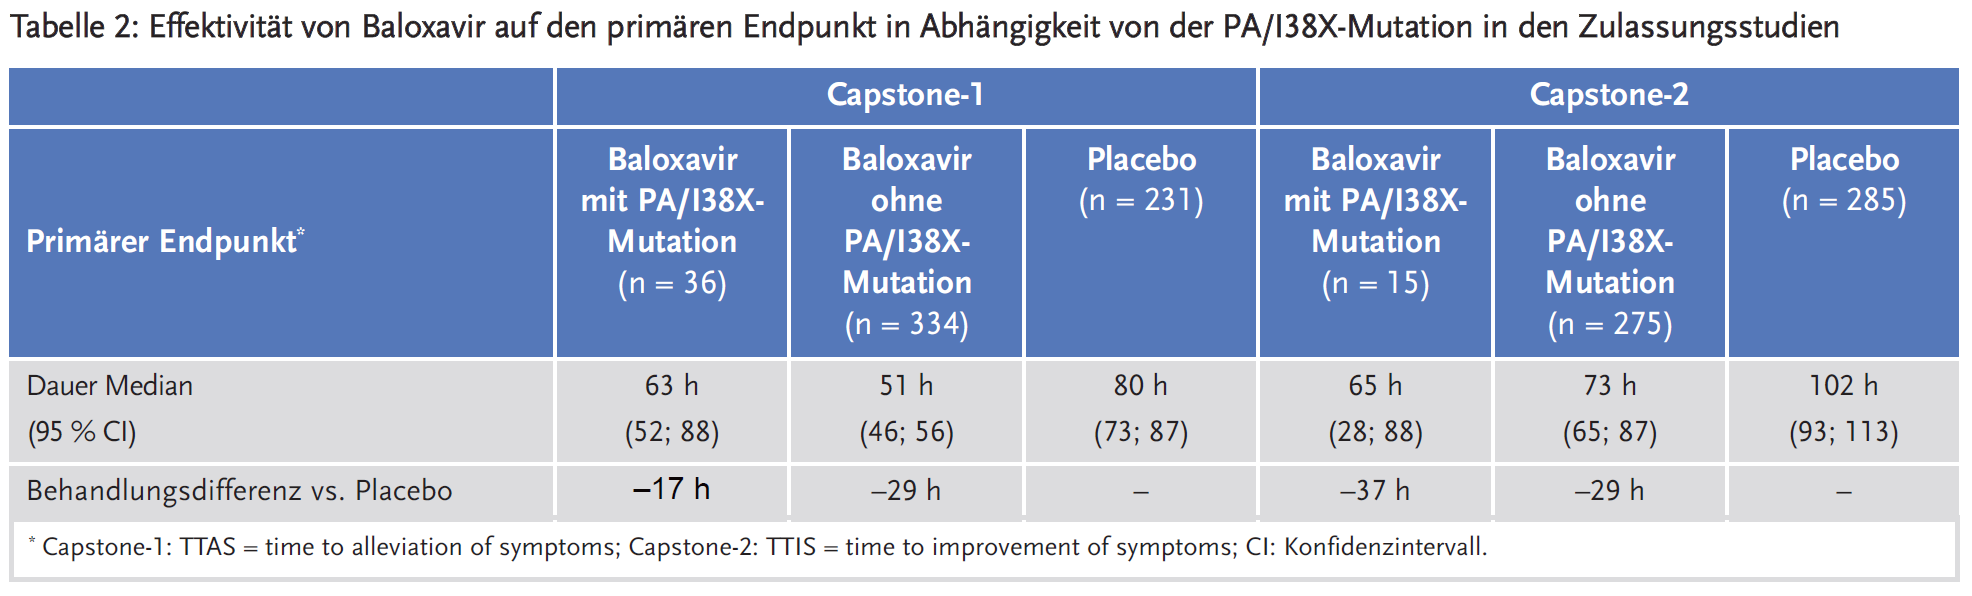 Tabelle 2: Effektivität von Baloxavir auf den primären Endpunkt in Abhängigkeit von der PA/I38X-Mutation in den Zulassungsstudien